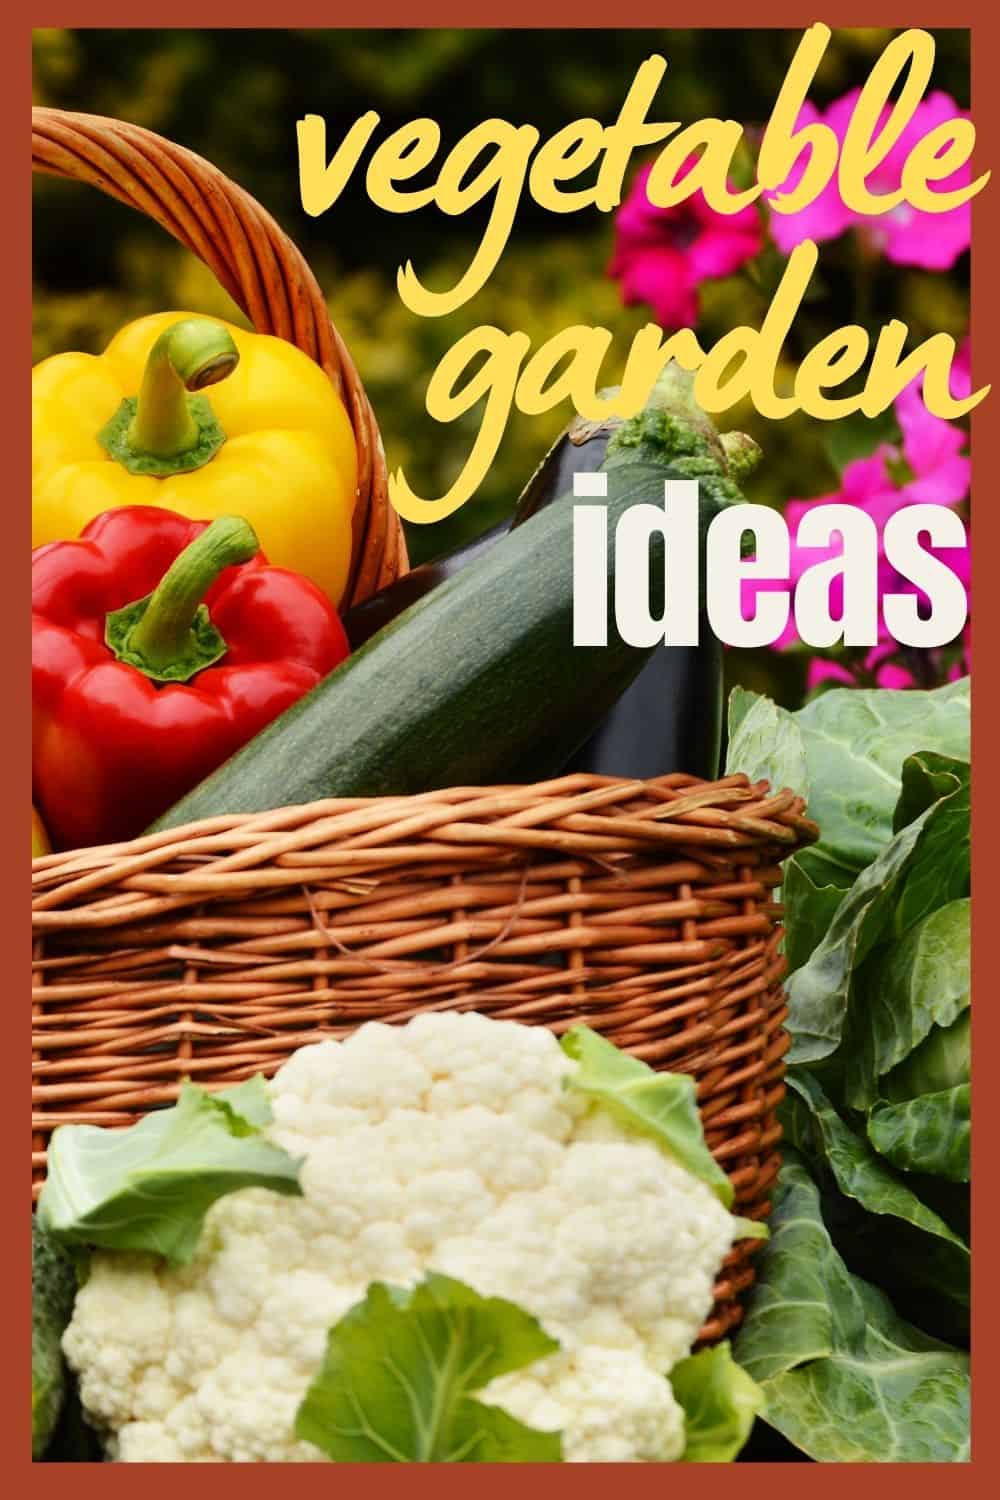 Backyard vegetable garden ideas